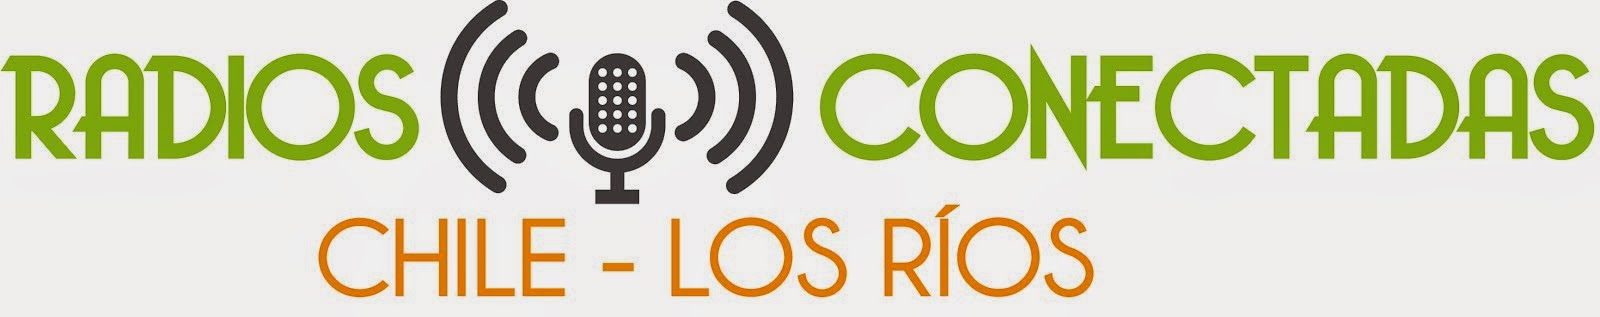 Red  Radios Conectadas Chile - Los Ríos